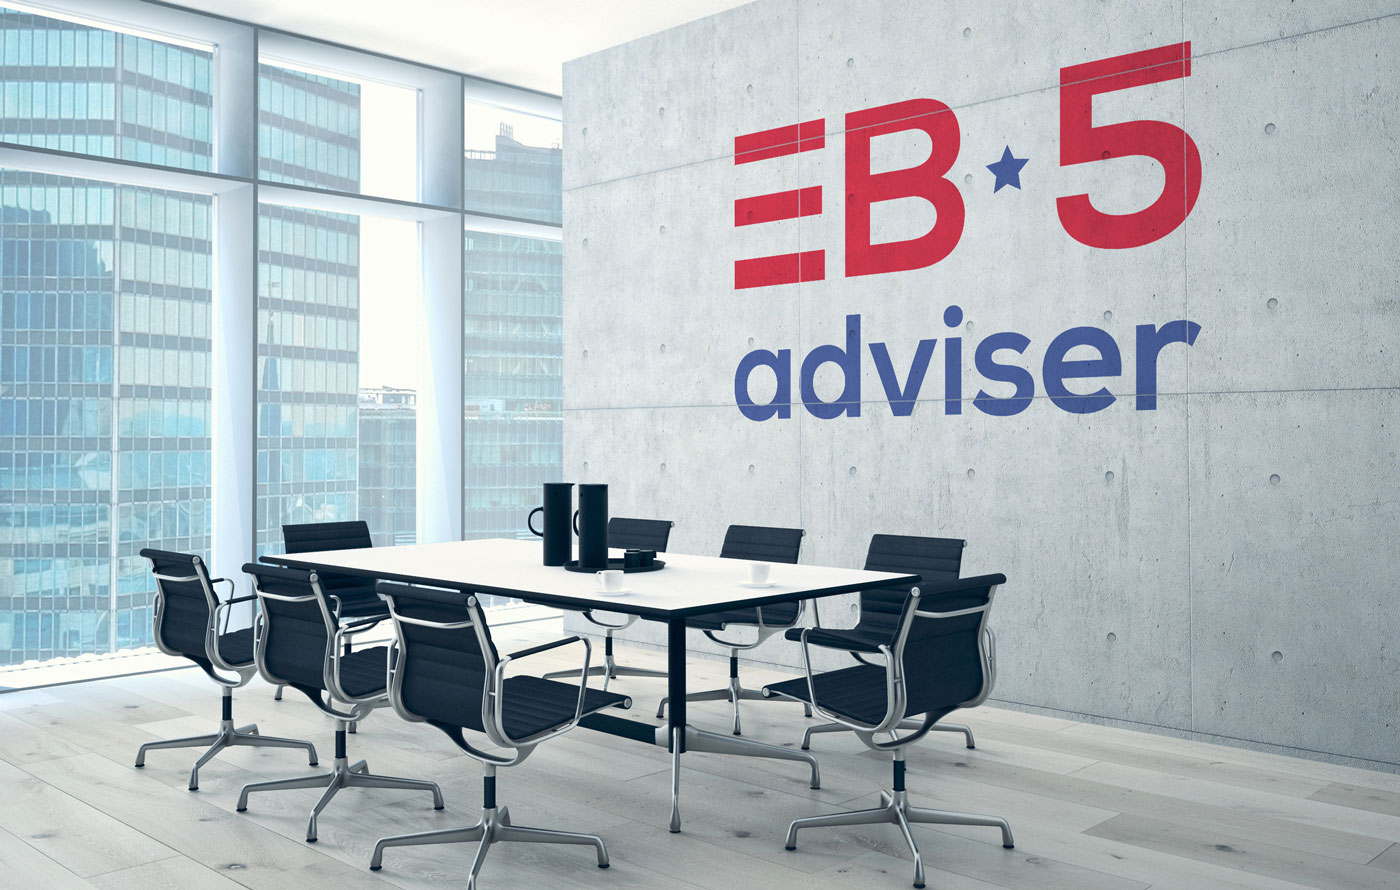 Айдентика иммиграционного адвокатского бюро EB5-Adviser